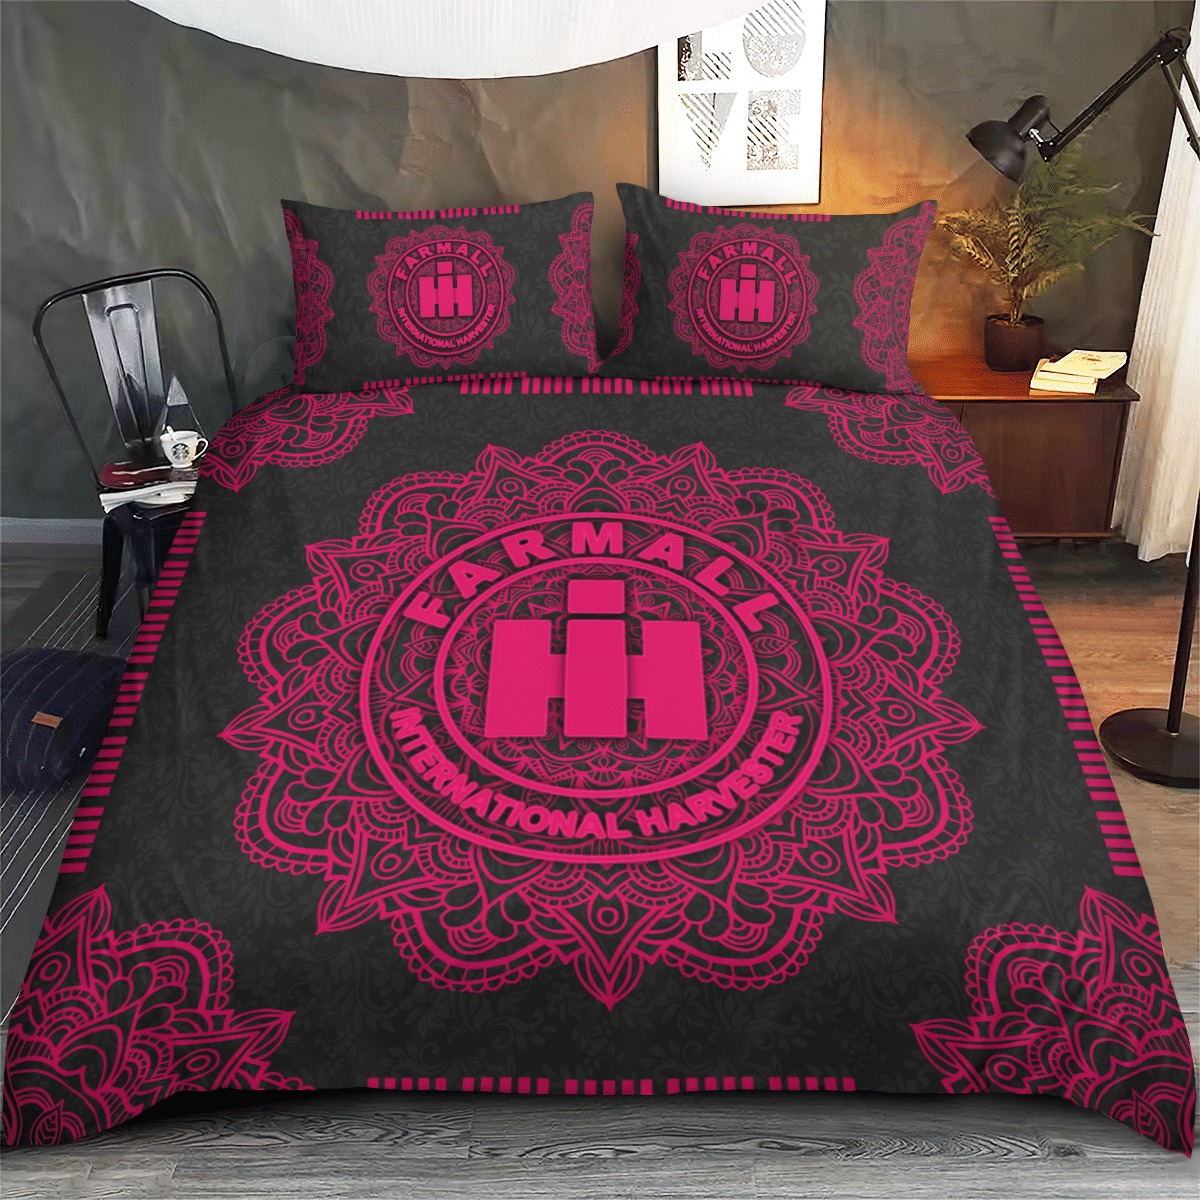 Farmall International Harvester IH Mandala quilt bedding set 2